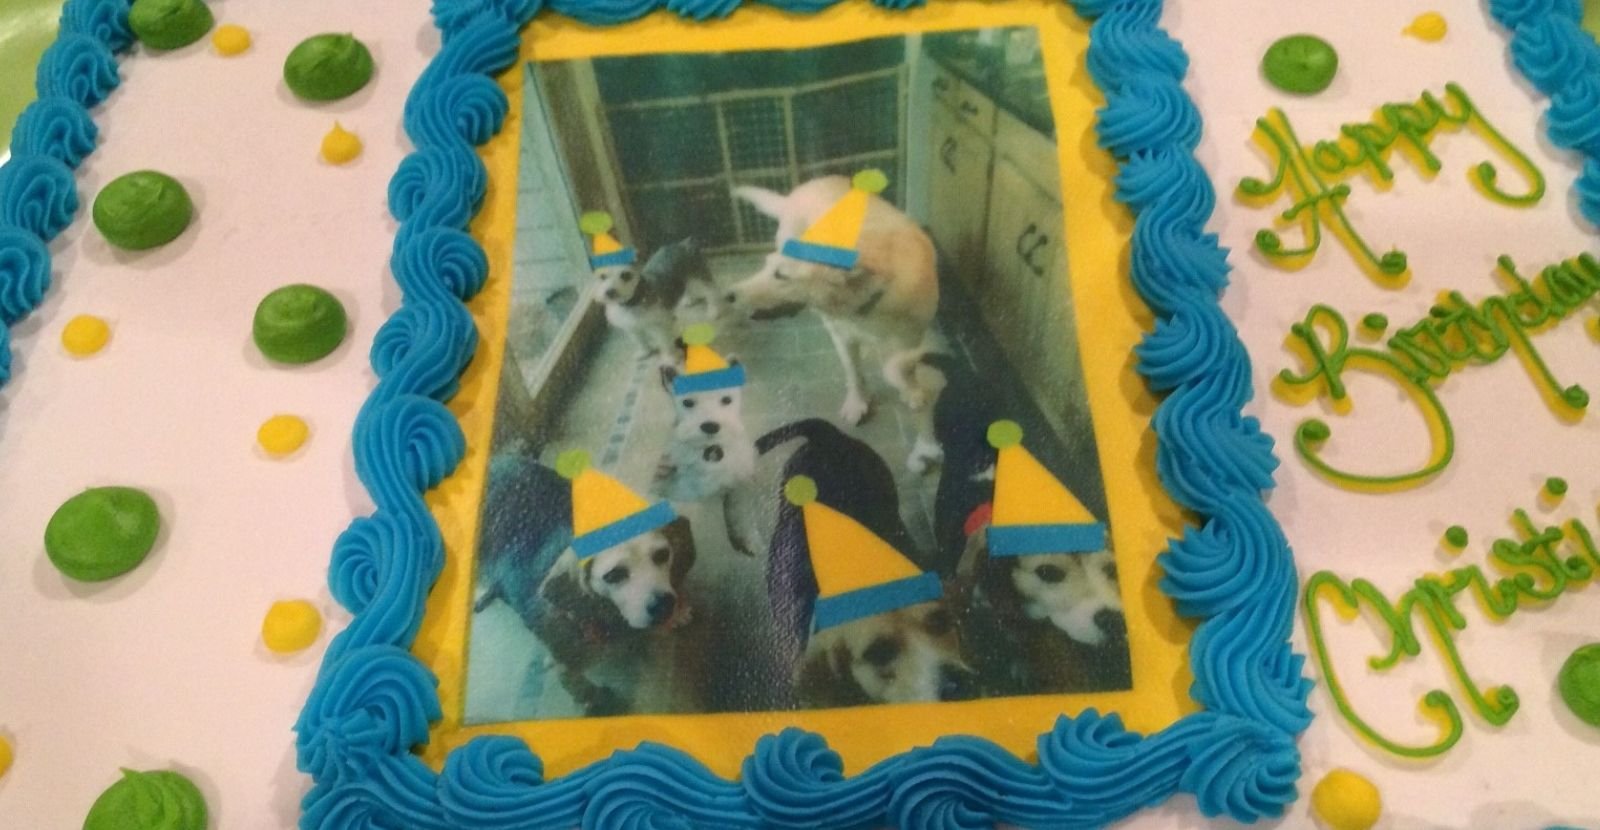 Dog themed birthday cake